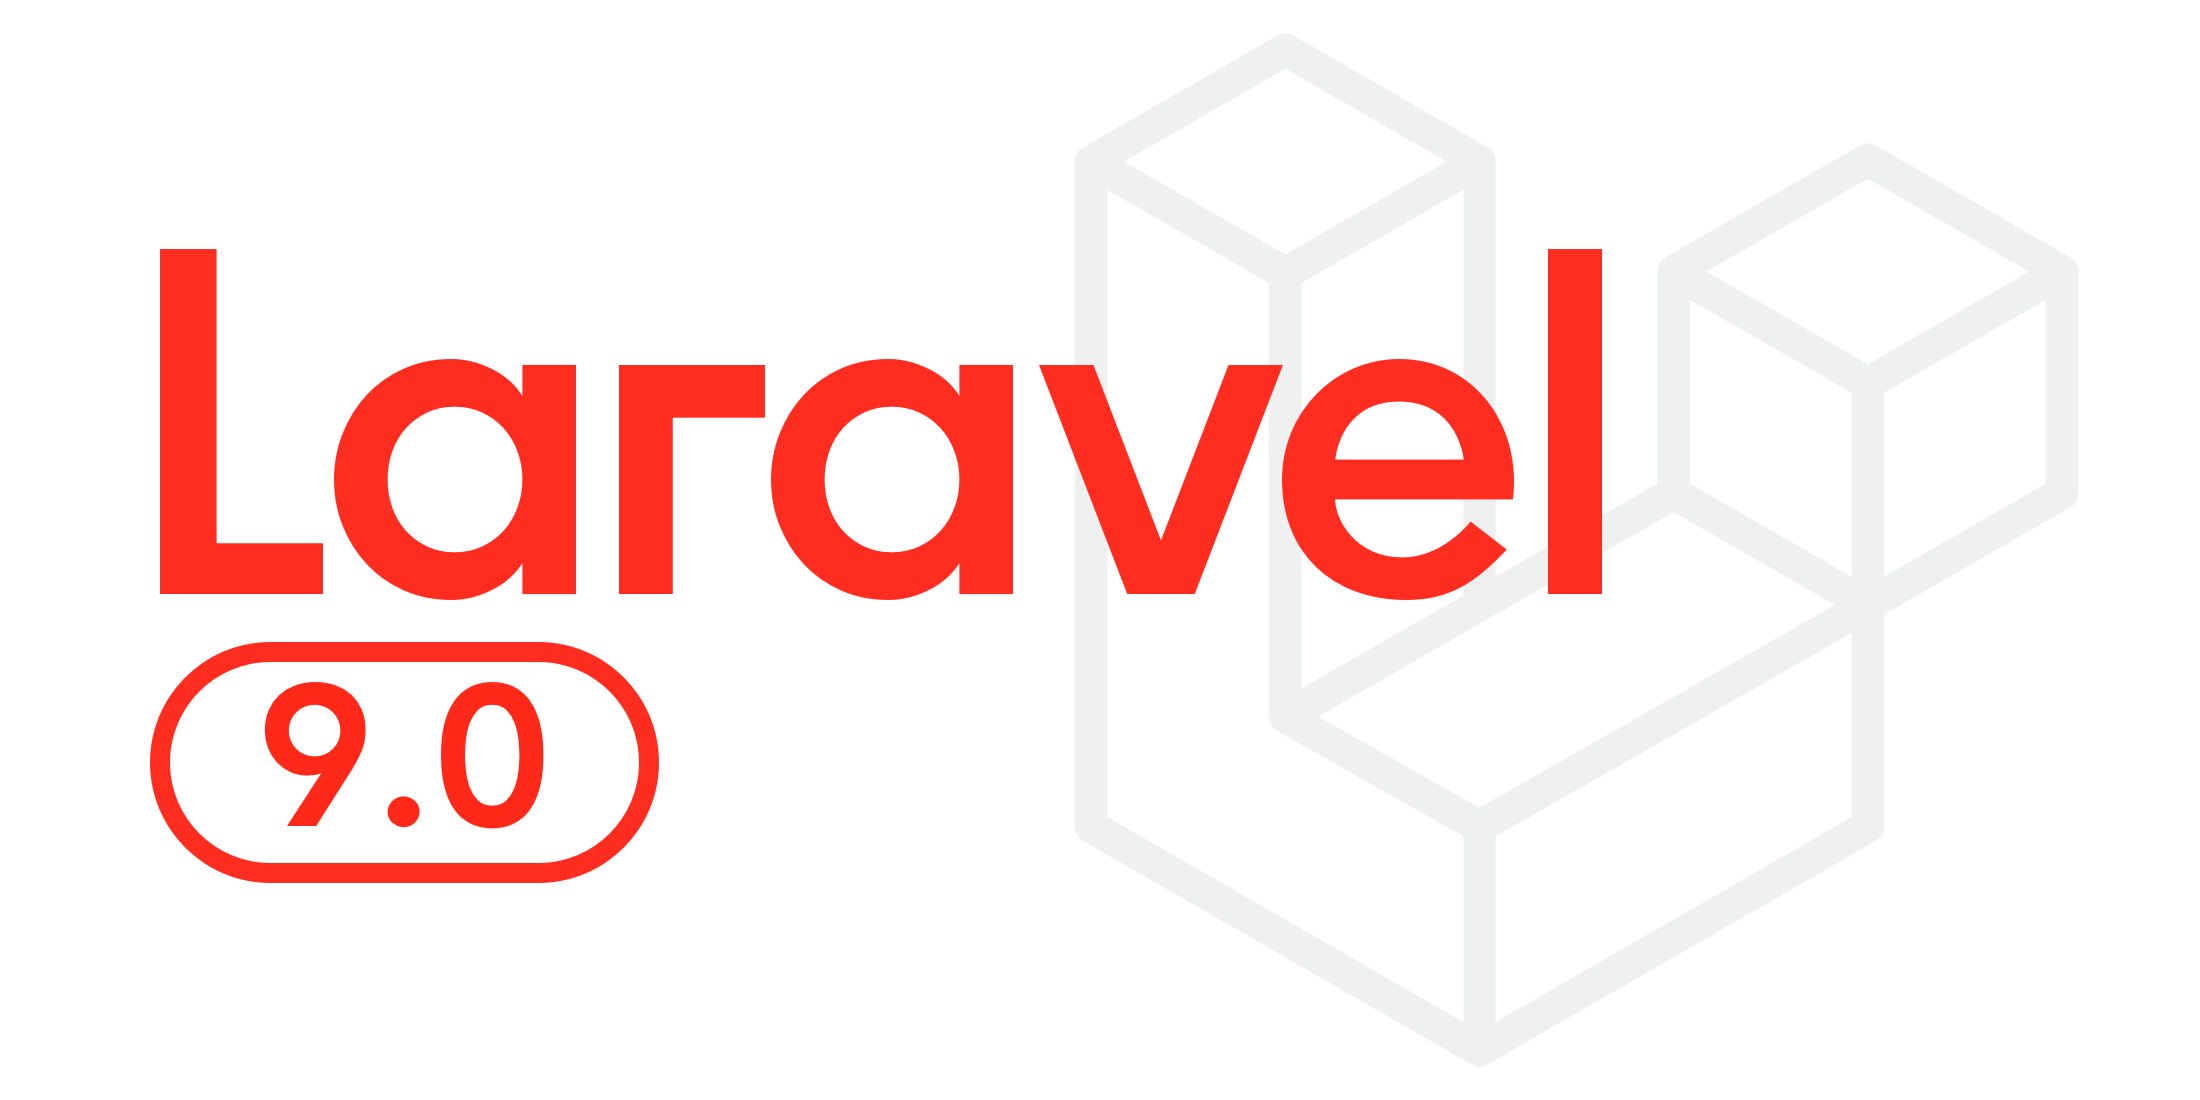 Overview of Laravel Framework